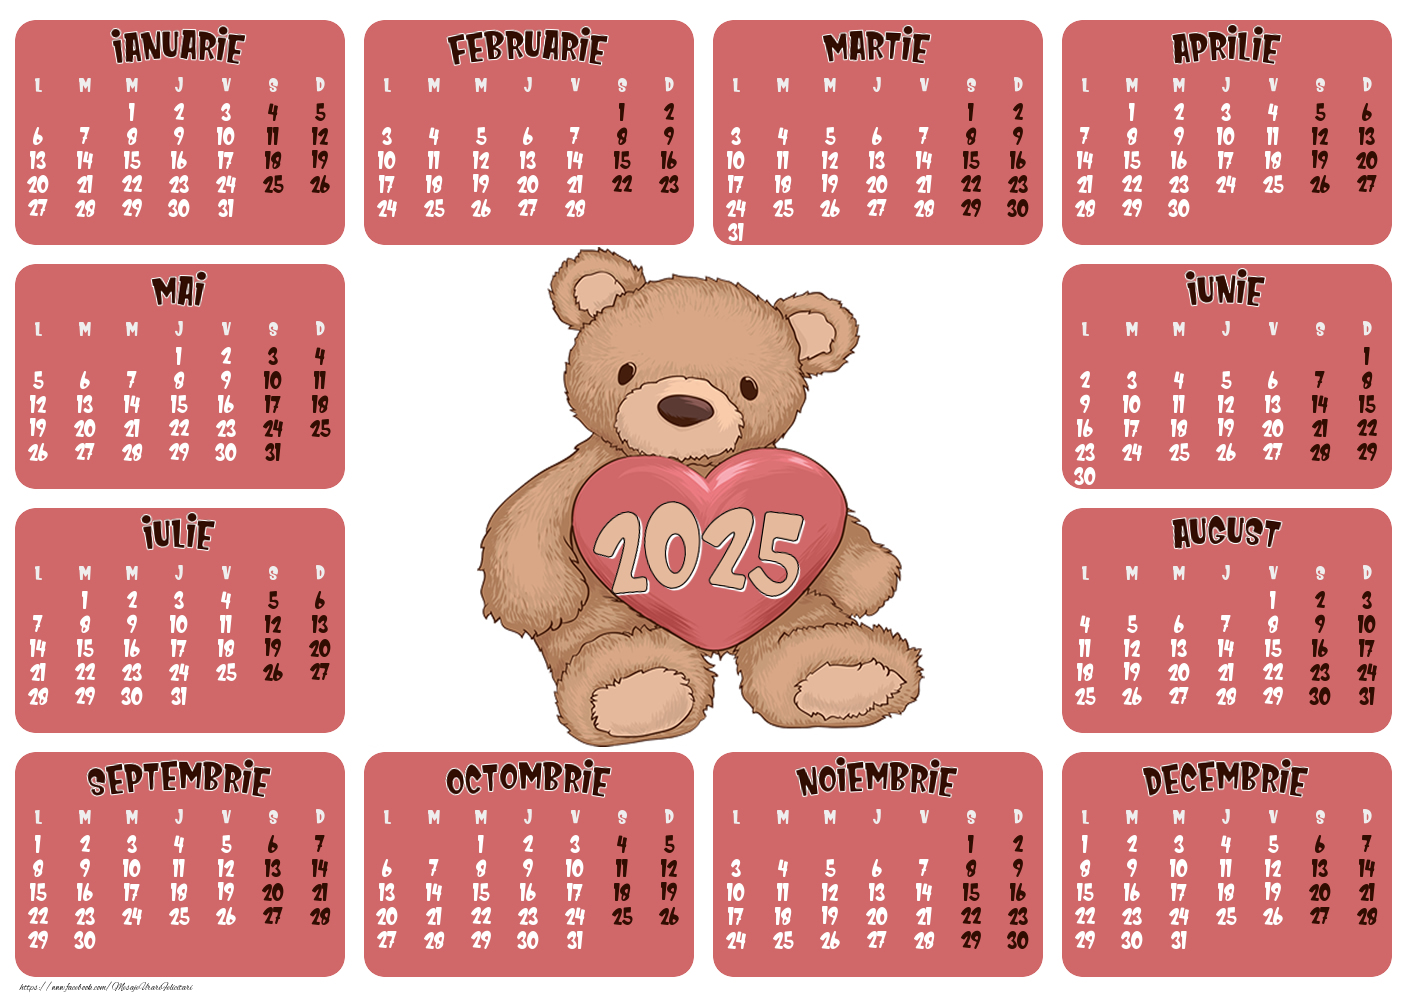 Calendar 2025 - Ursulet - Model 0012